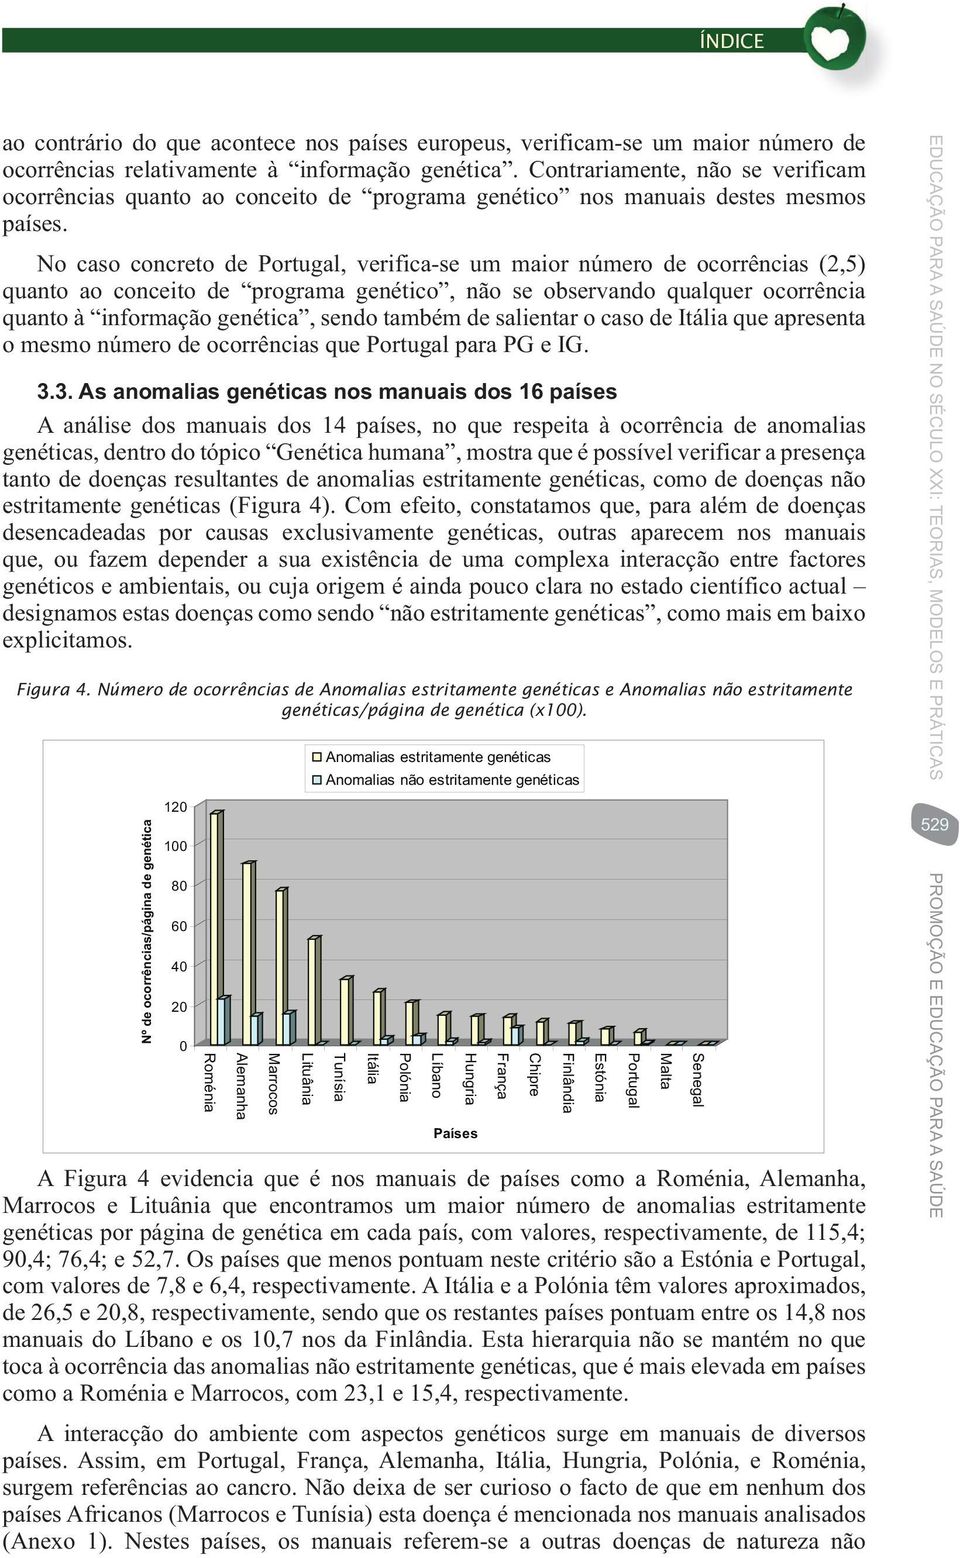 No caso concreto Portugal, verifica-se um maior número (2,5) quanto ao conceito programa genético, não se observando qualquer ocorrência quanto à informação genética, sendo também salientar o caso